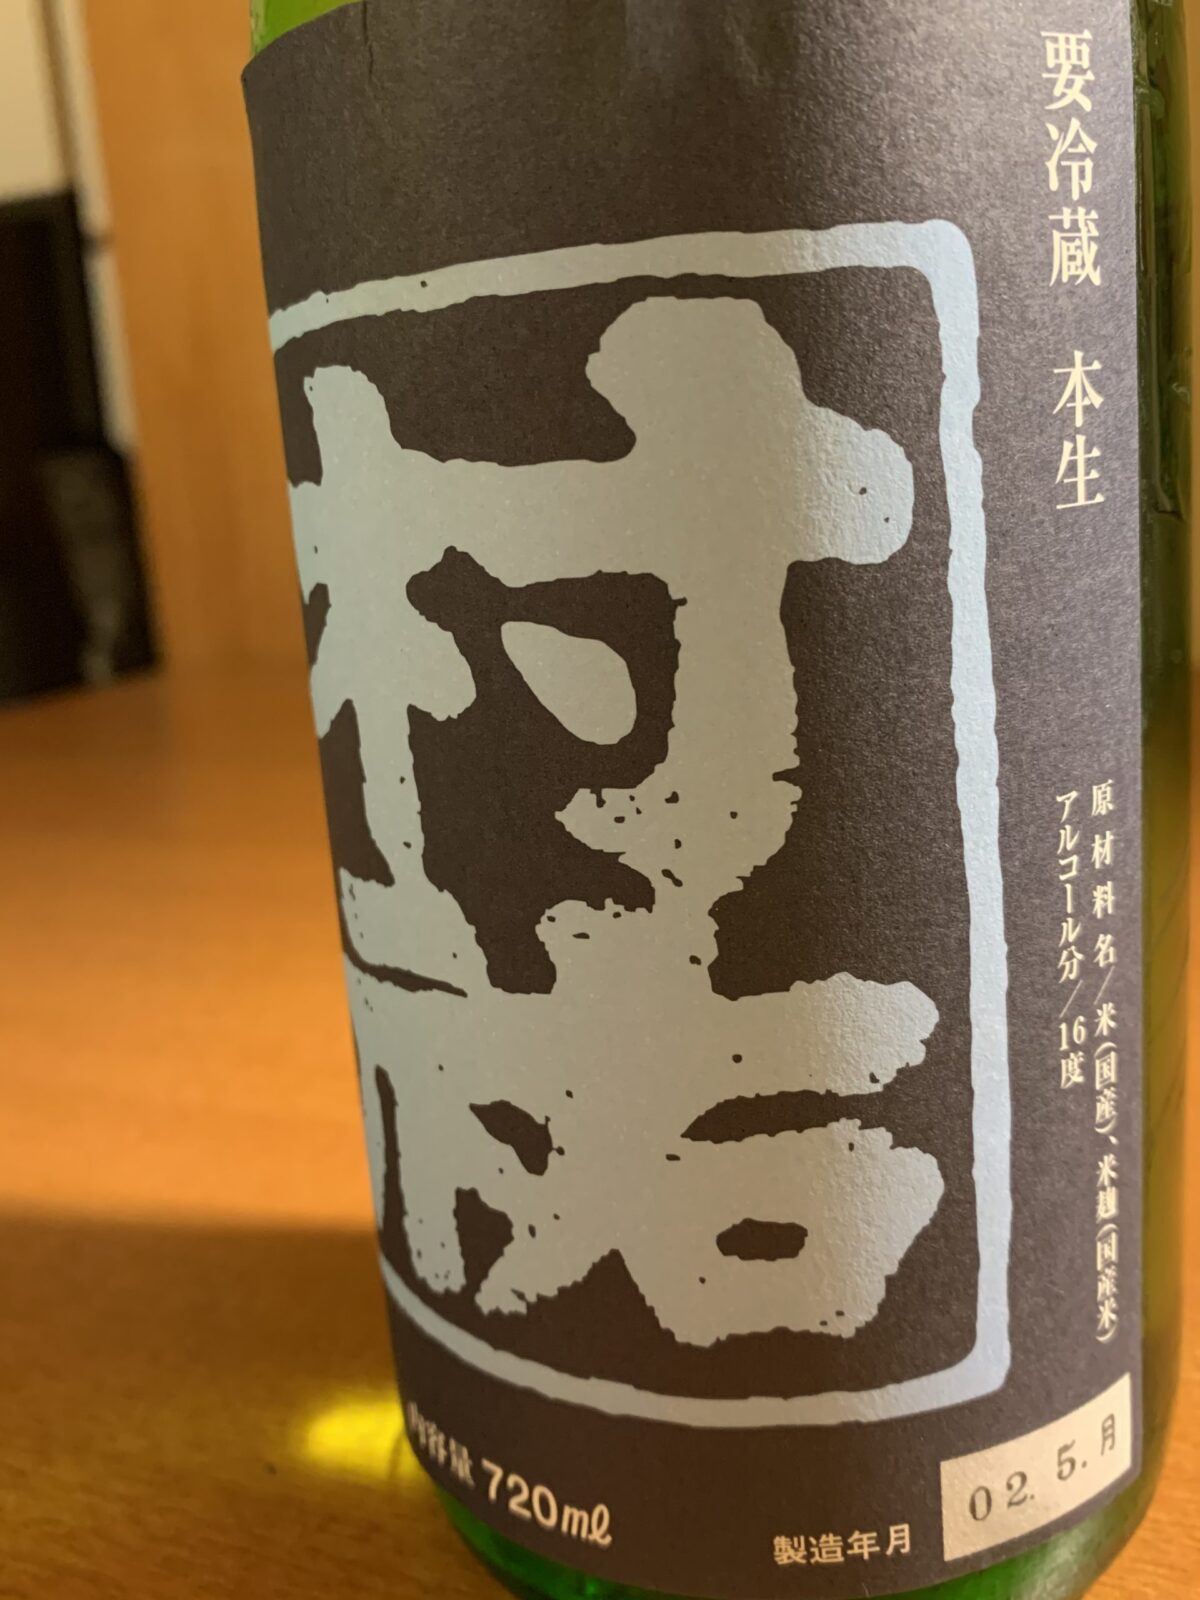 新潟の地酒『村祐』紺瑠璃は、爽やかな酸味と上品な甘味のハーモニー